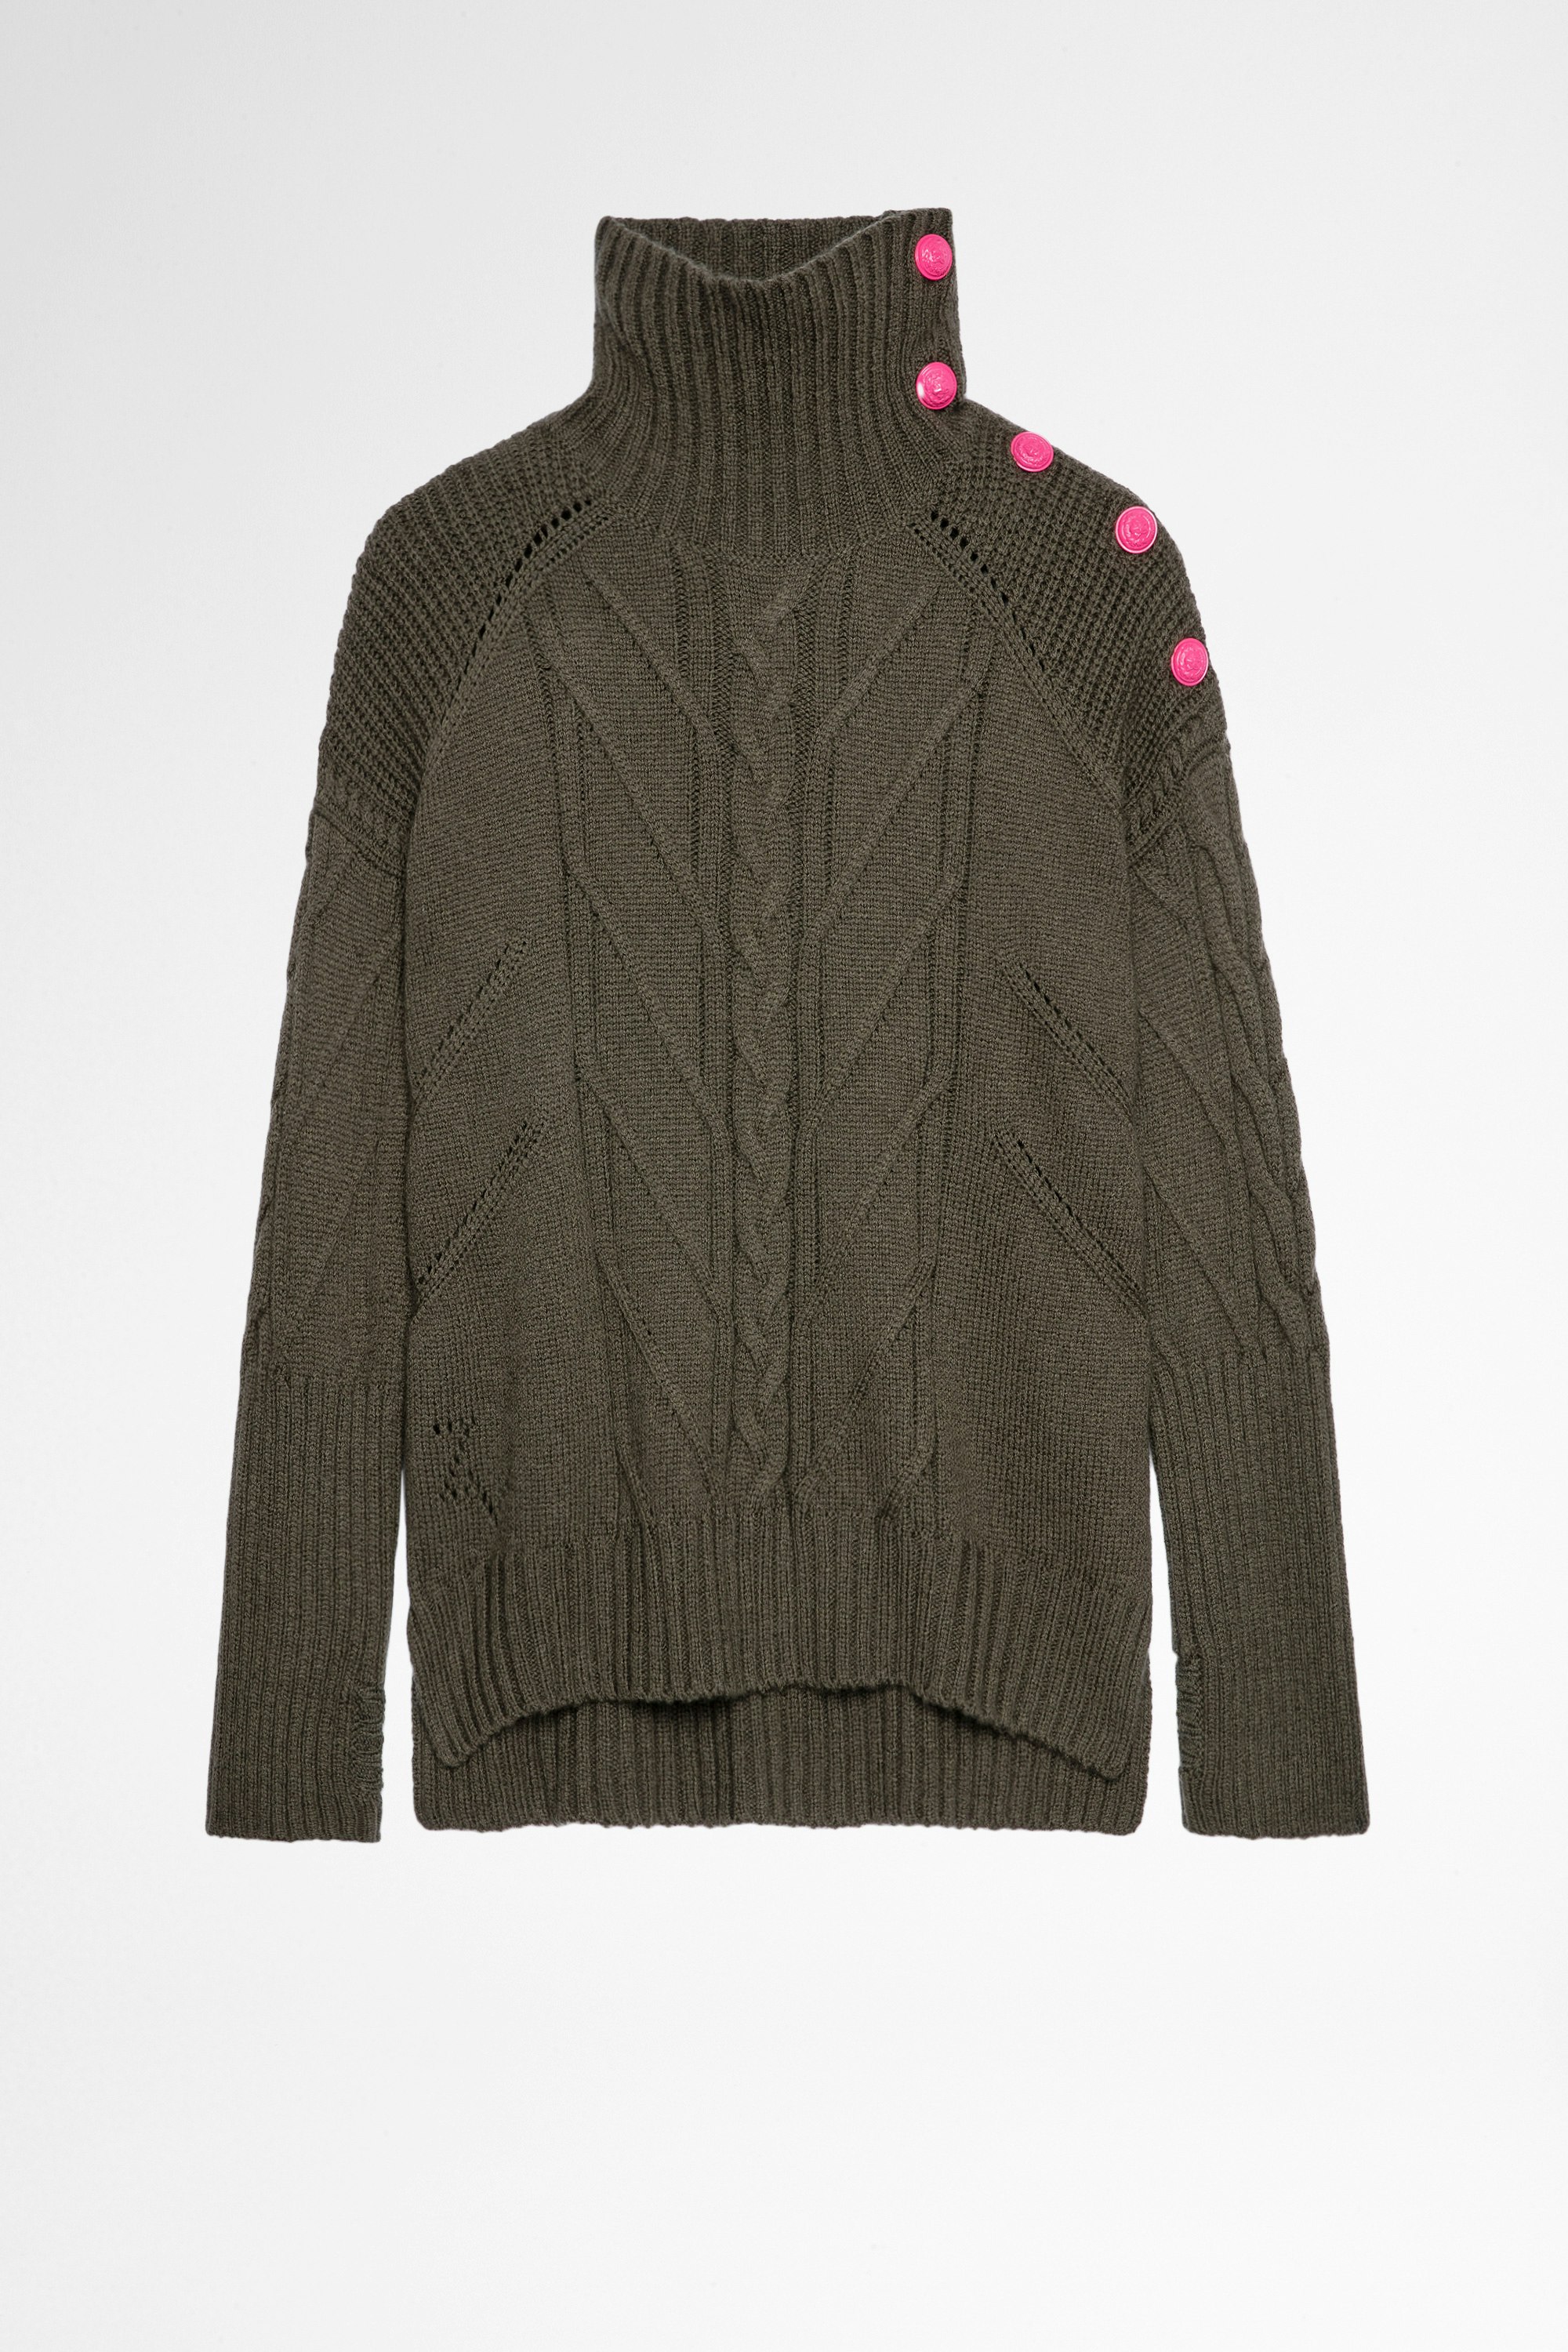 Jersey Alma Cachemira Jersey caqui de lana y cachemira con cuello vuelto y botones en contraste